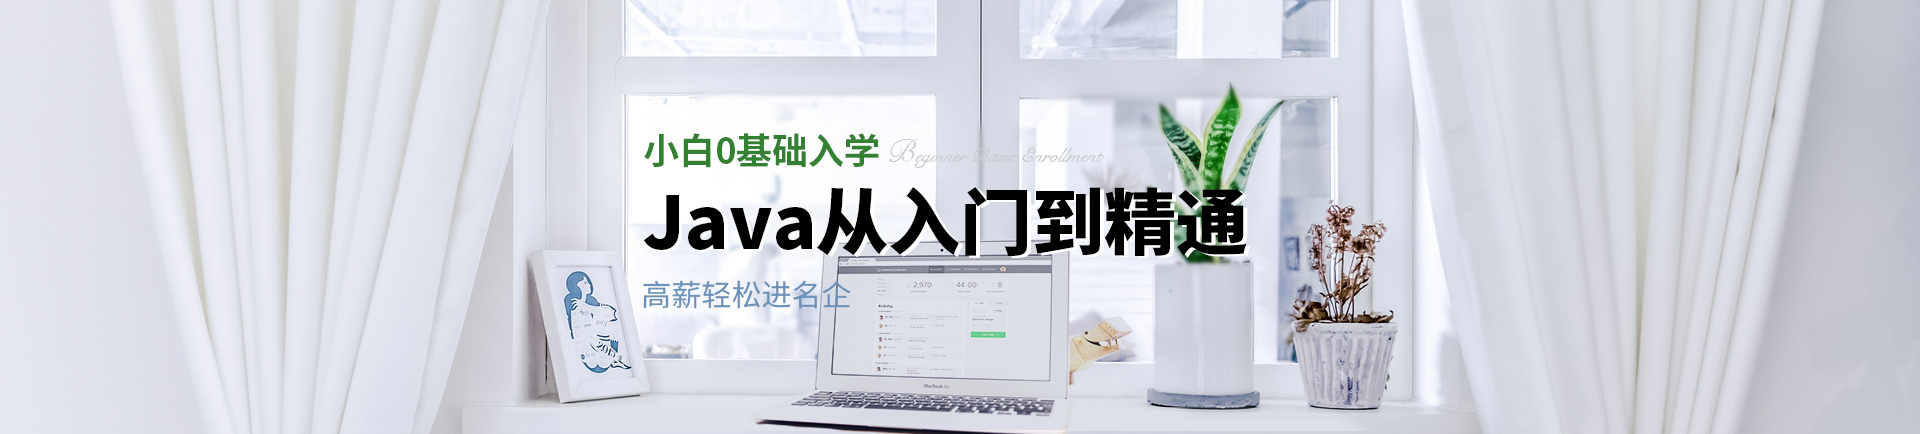 小白0基础入学 Java从入门到精通 高薪轻松进名企-fuzhou